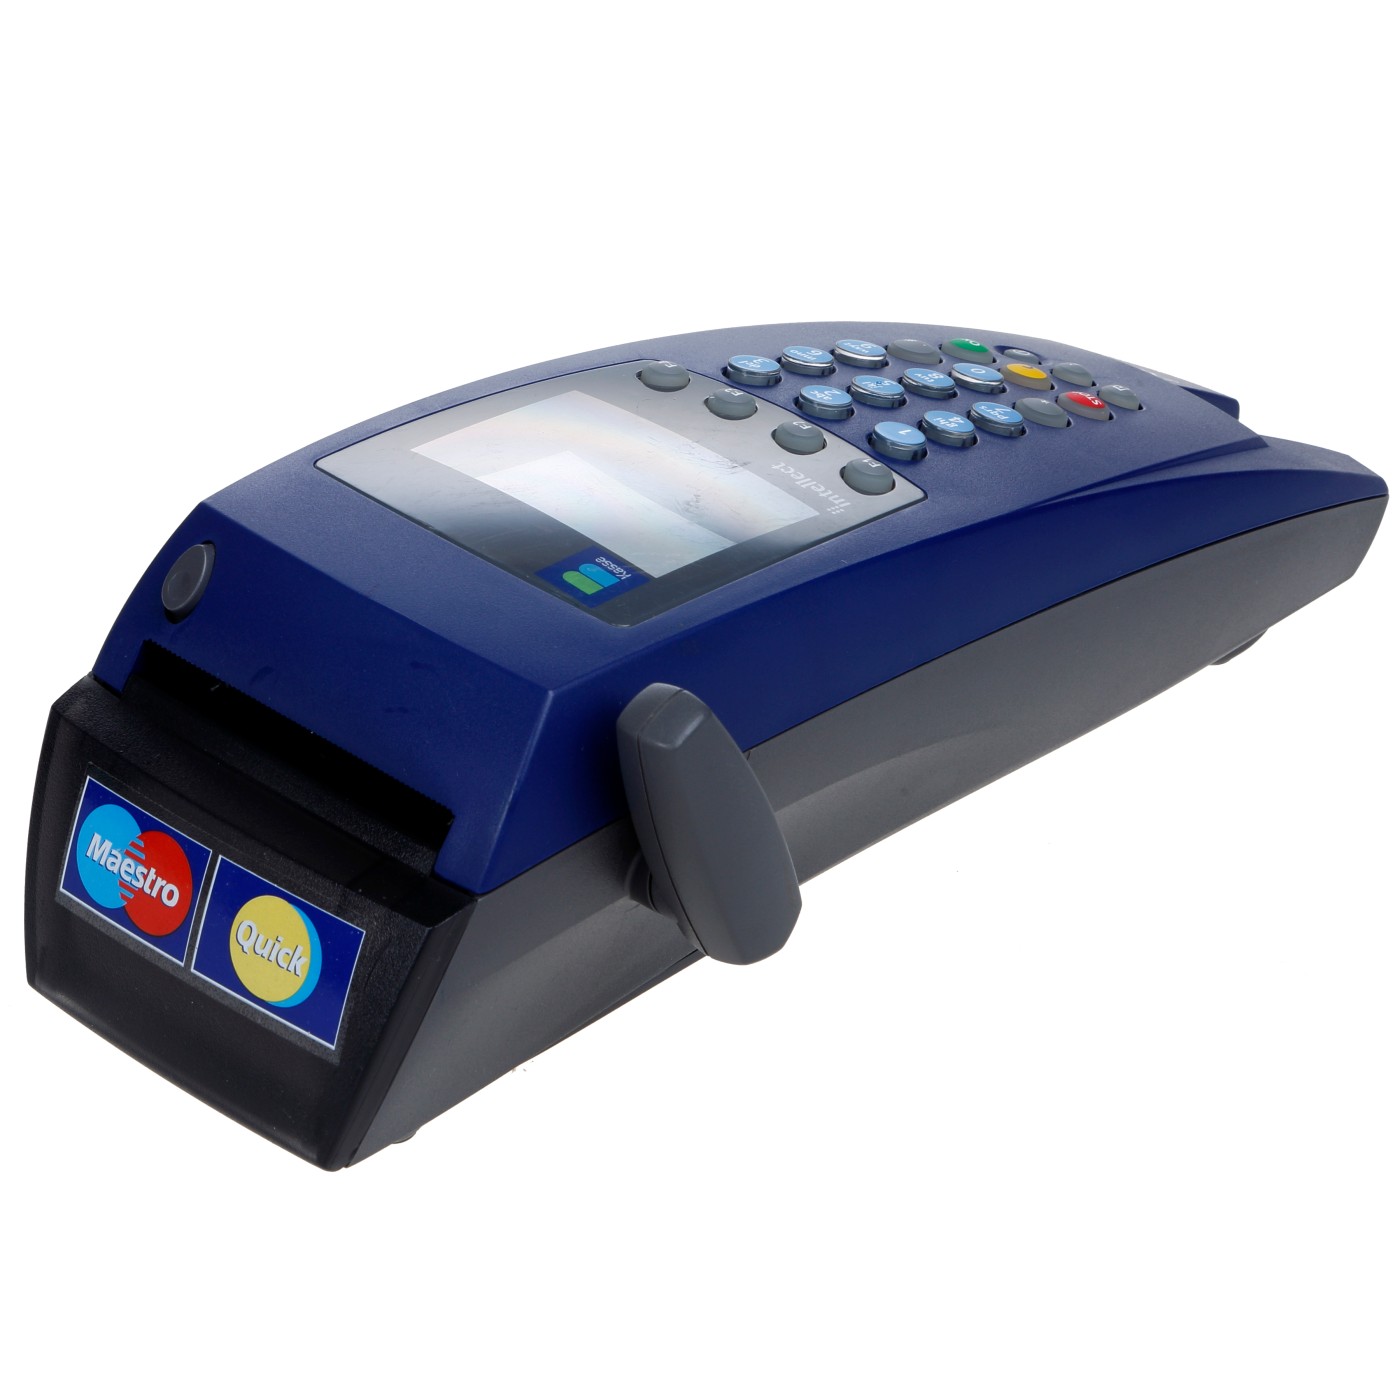 BANKOMAT KASSE INTELLECT AERO 520p GPRS : Bankomat Kasse Intellect Aero 520p GPRS 